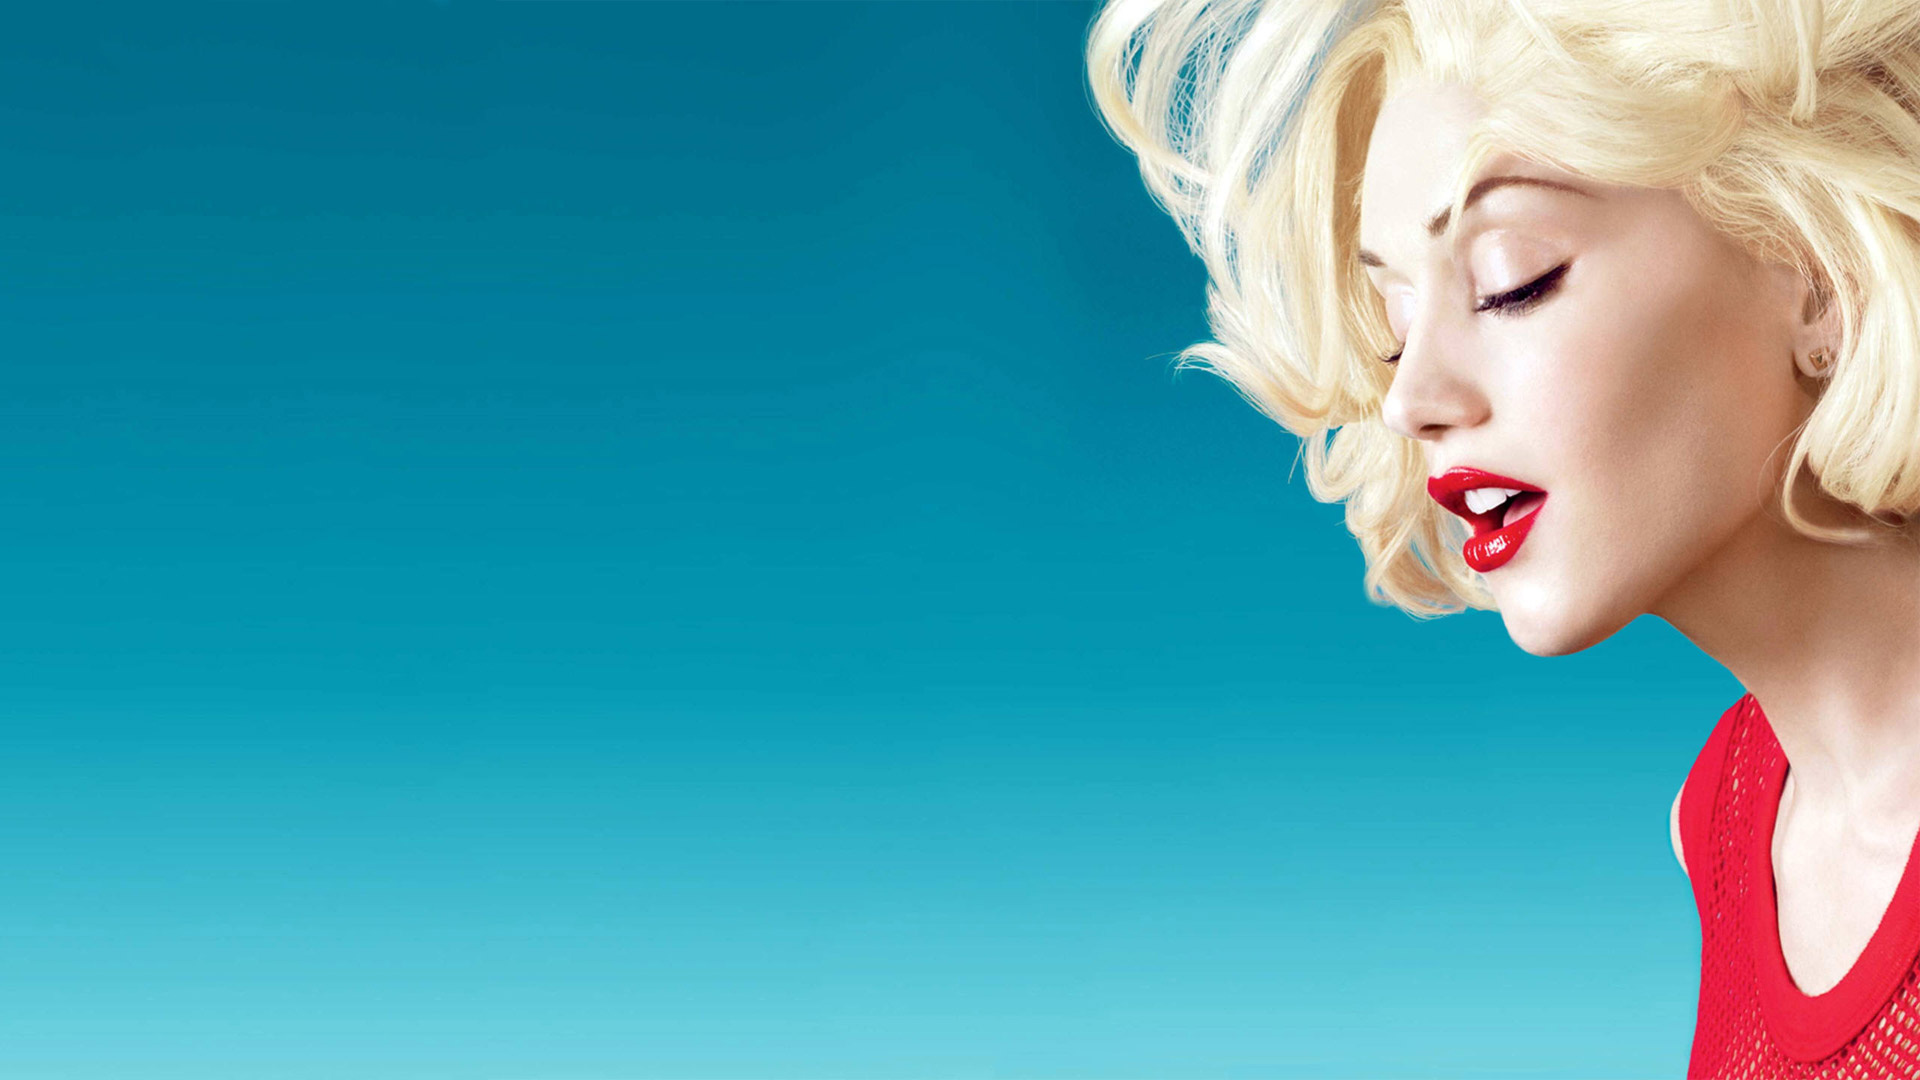 Gwen Stefani's style, Music sensation, Trendsetter, Timeless beauty, 1920x1080 Full HD Desktop